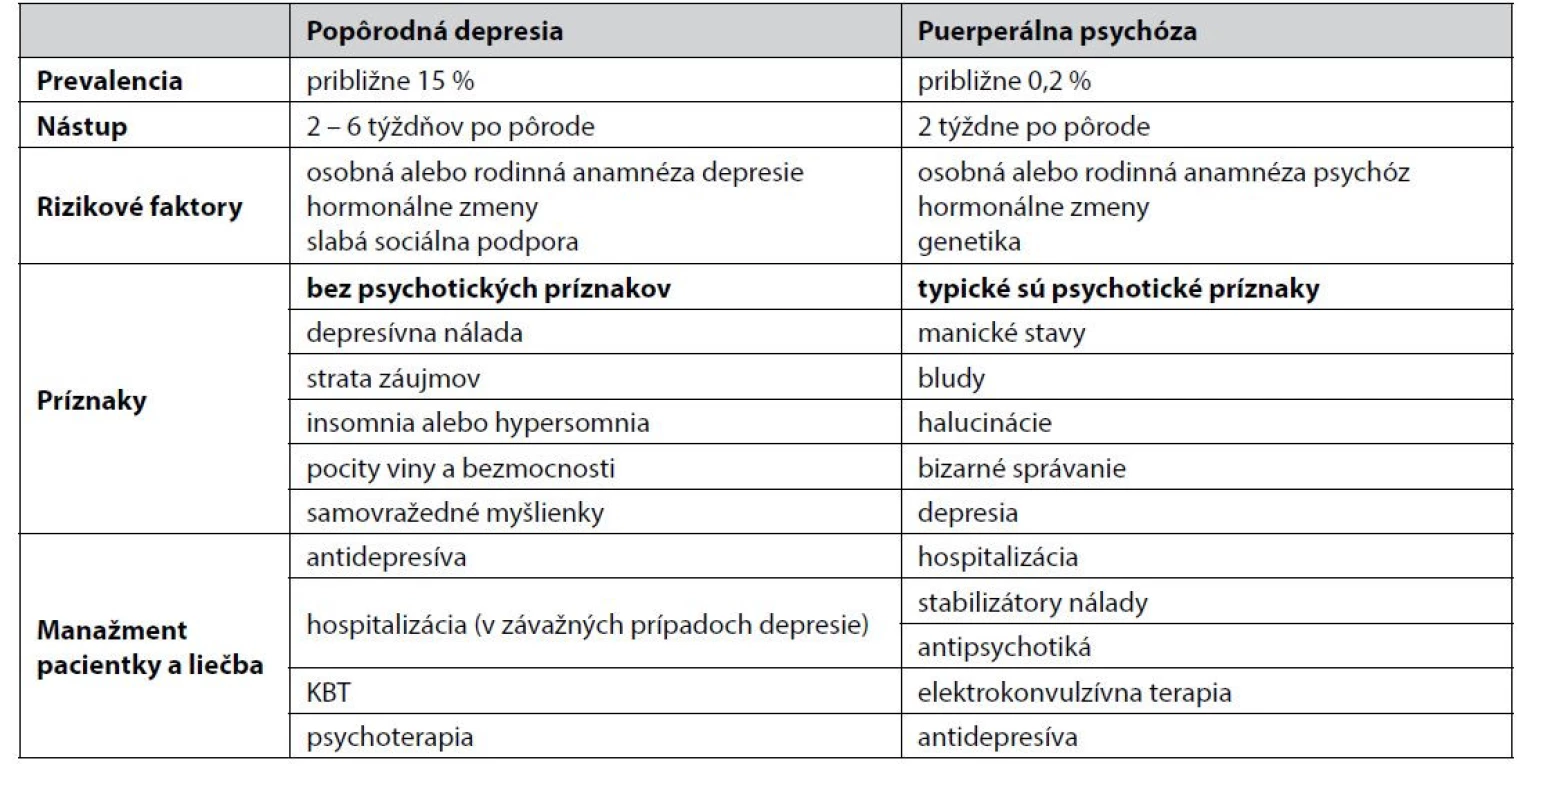 Základné rozdiely medzi popôrodnou depresiou a puerperálnou psychózou5)